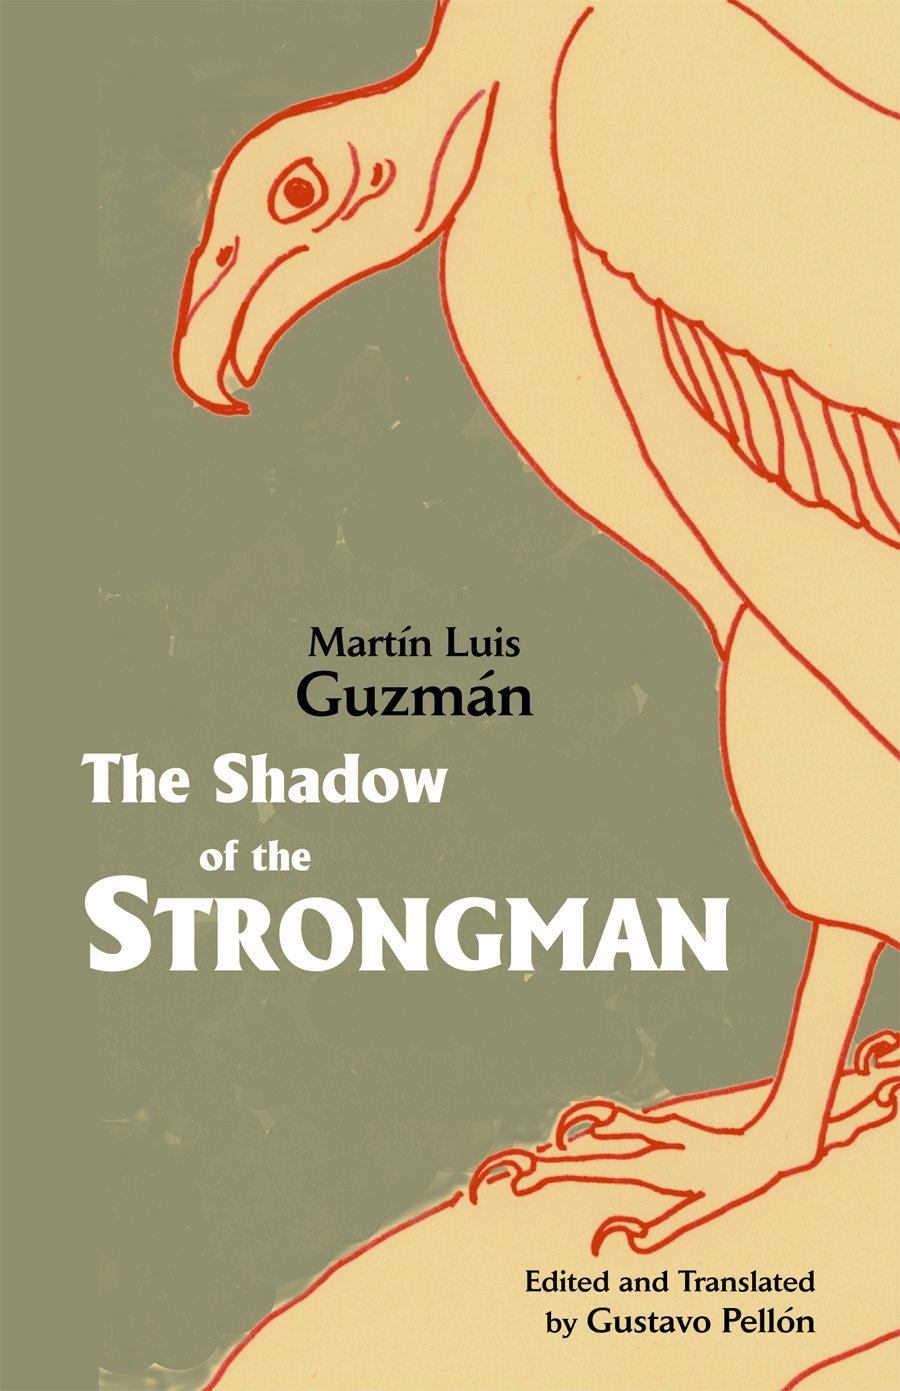 The Shadow of the Strongman | Martin Luis Guzman